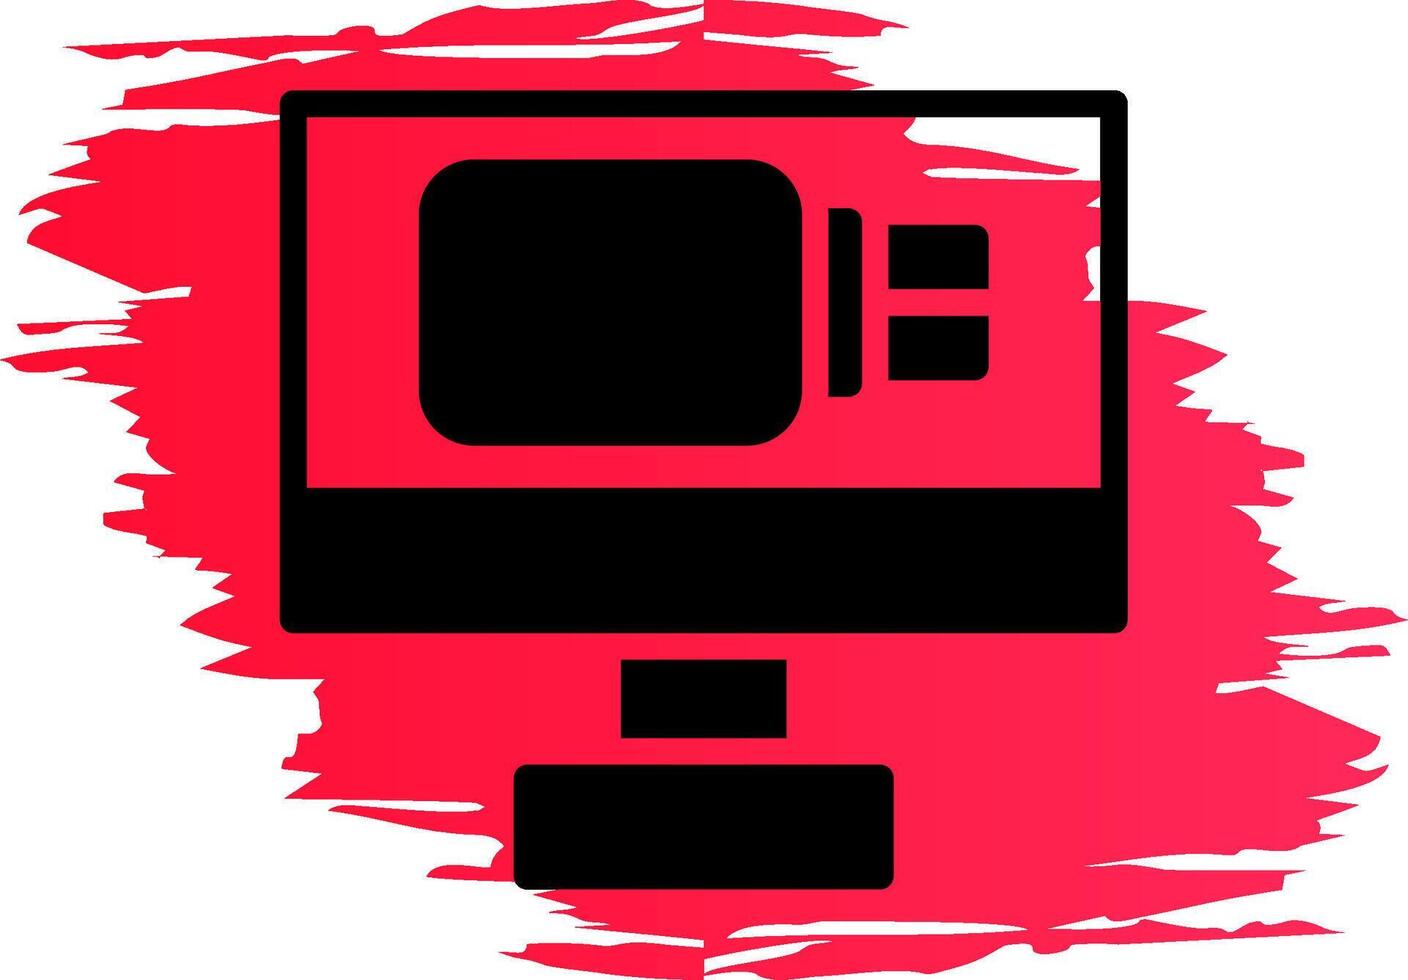 USB Drive Creative Icon Design vector